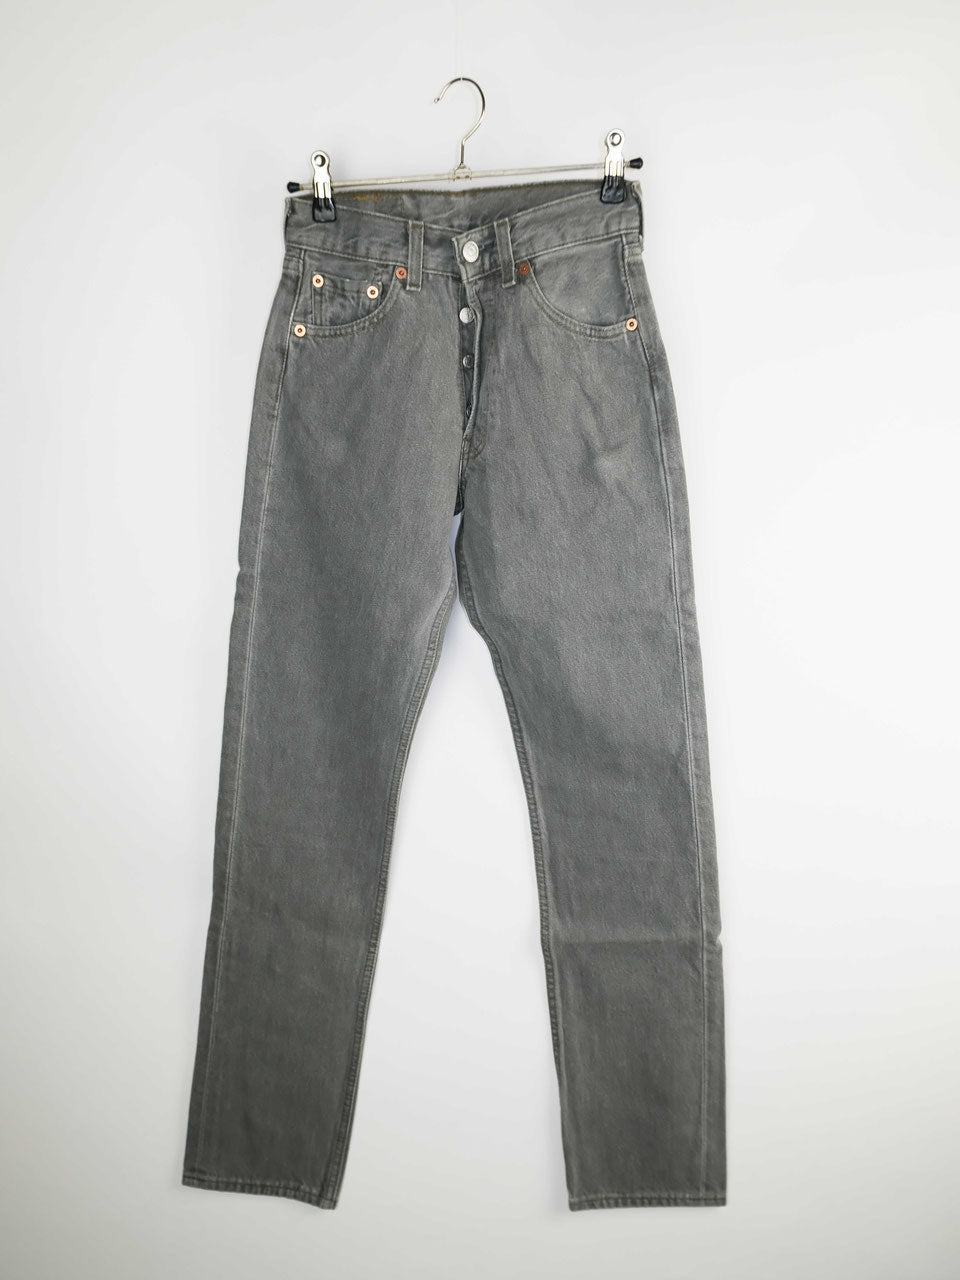 Levis jeans gray deadstock